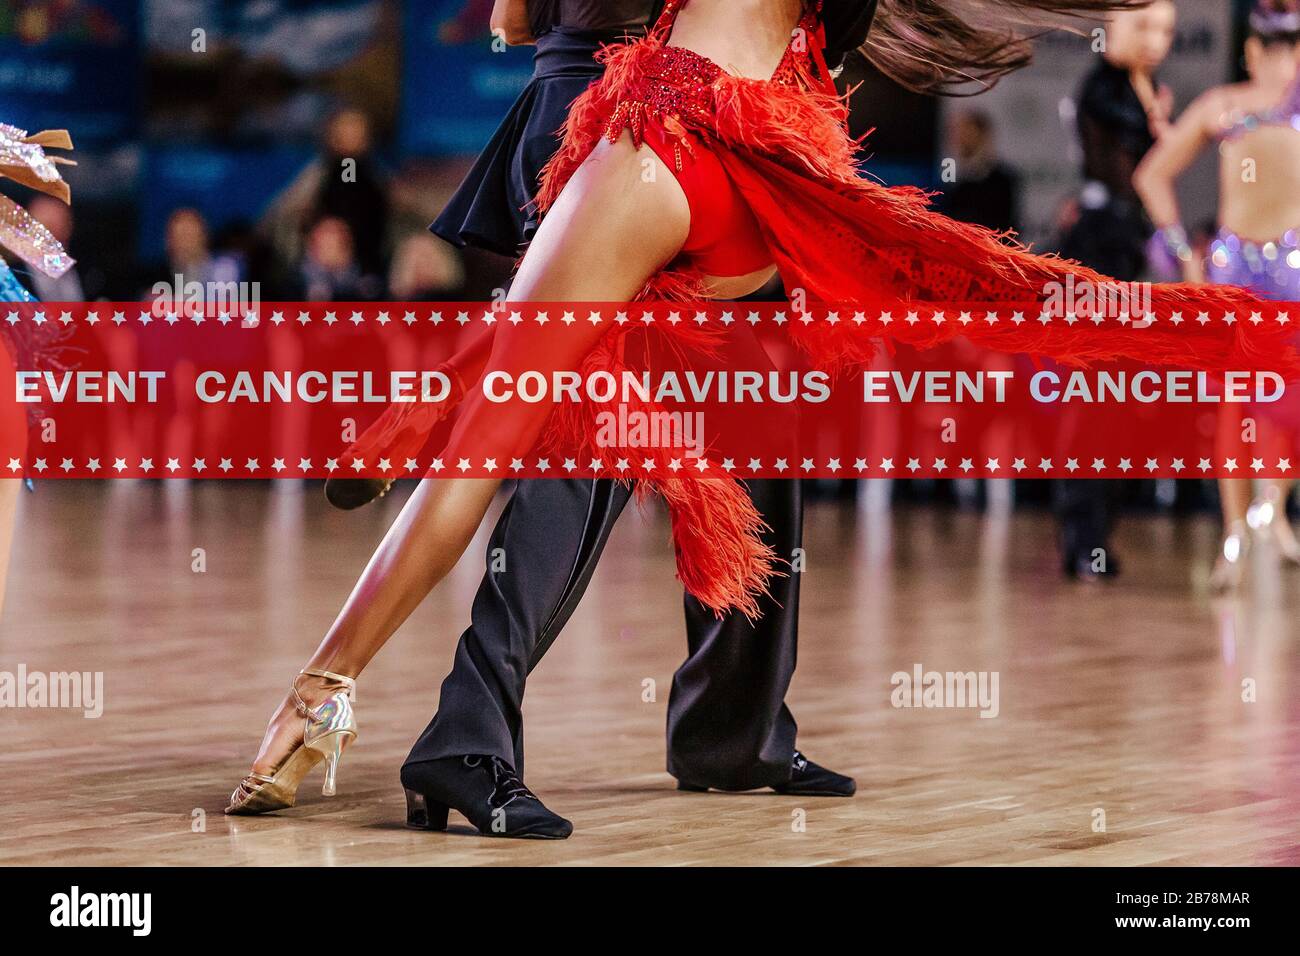 advertencia cinta evento cancelado coronavirus en el fondo danza pareja bailarines baile salón de baile Foto de stock